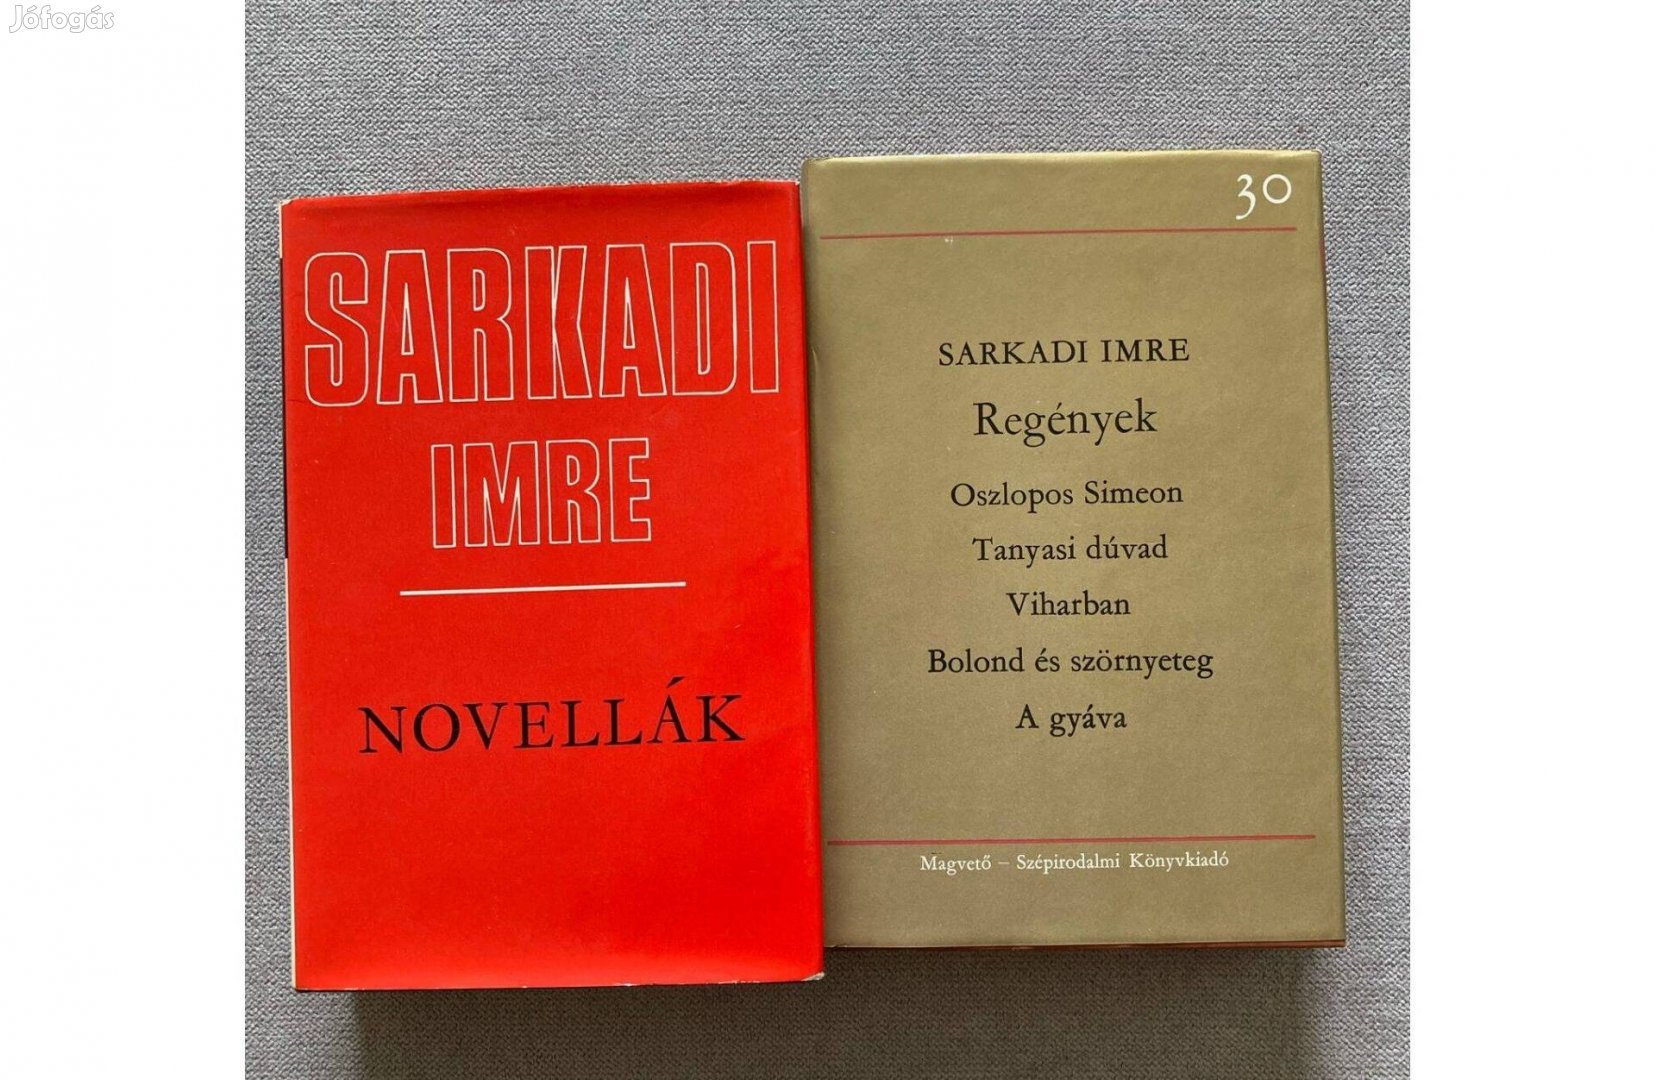 Sarkadi Imre: Novellák, regények